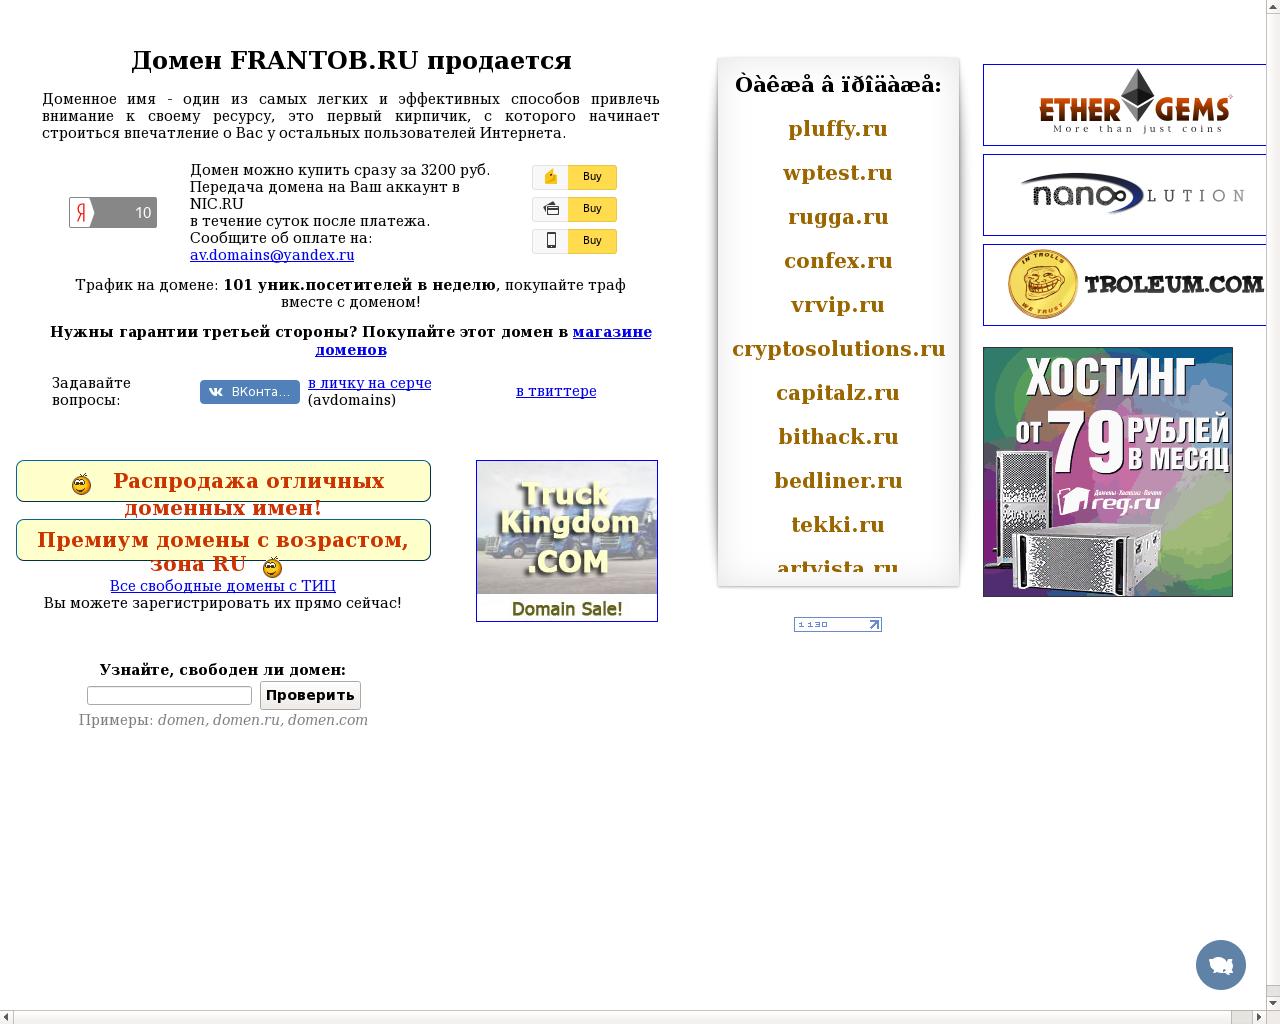 Изображение сайта frantob.ru в разрешении 1280x1024